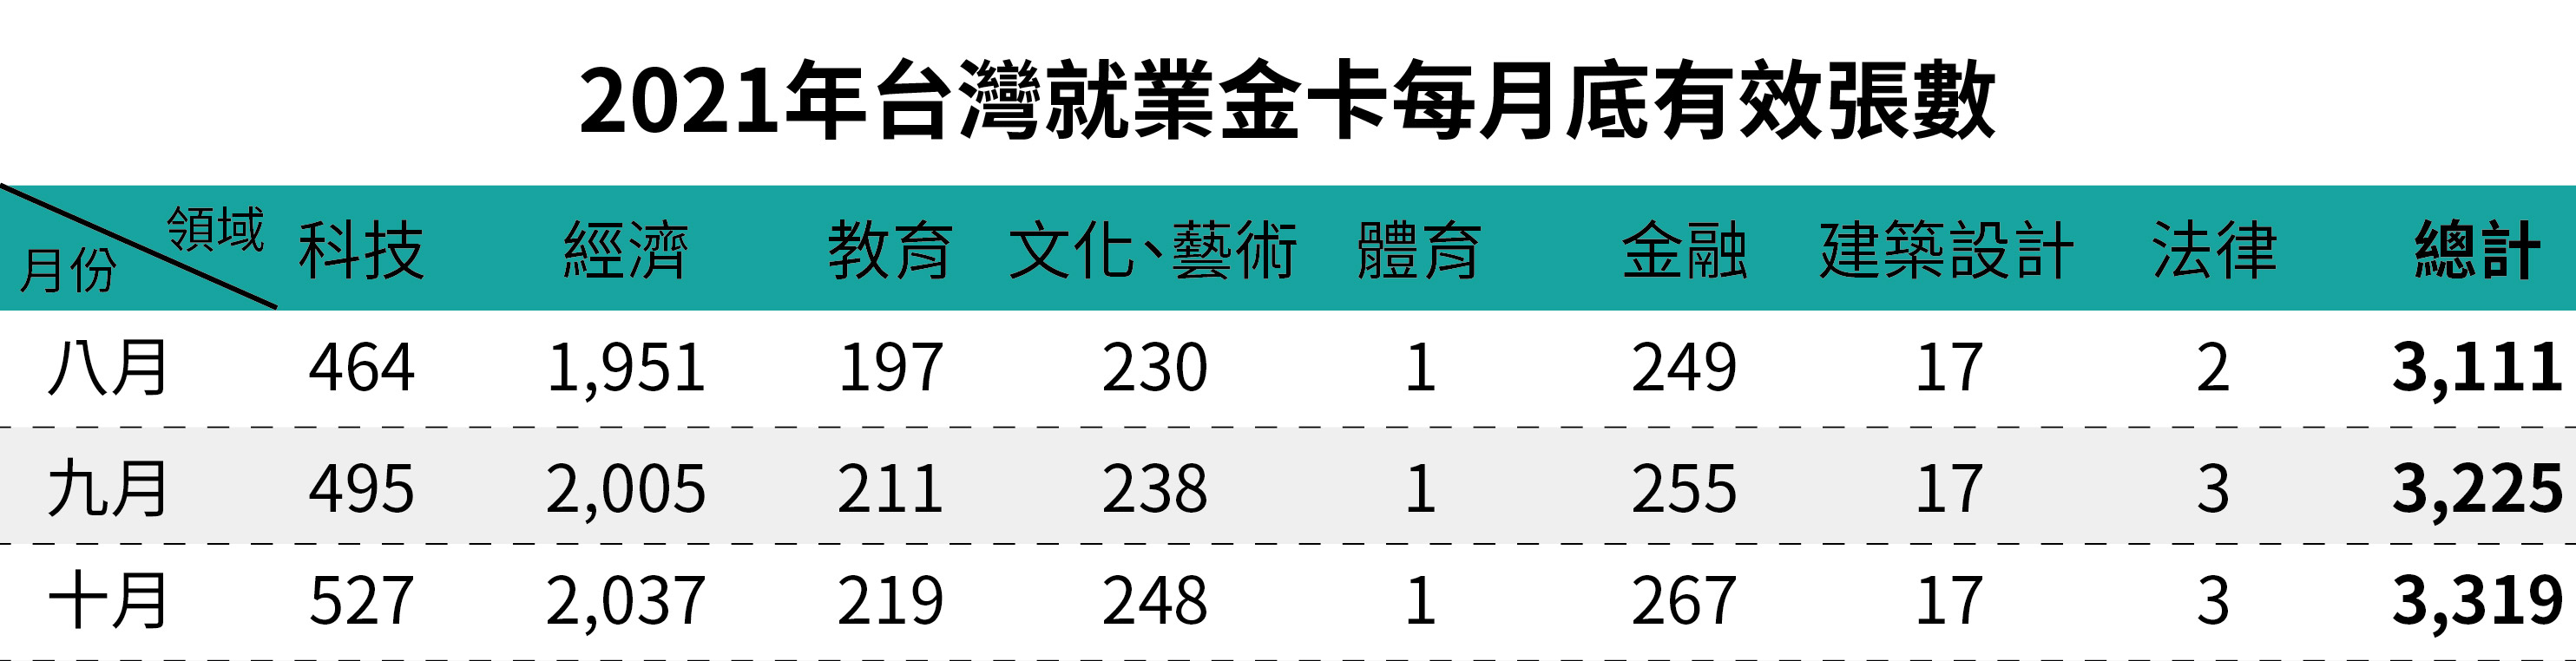 2021年台灣就業金卡每月底有效張數-十月